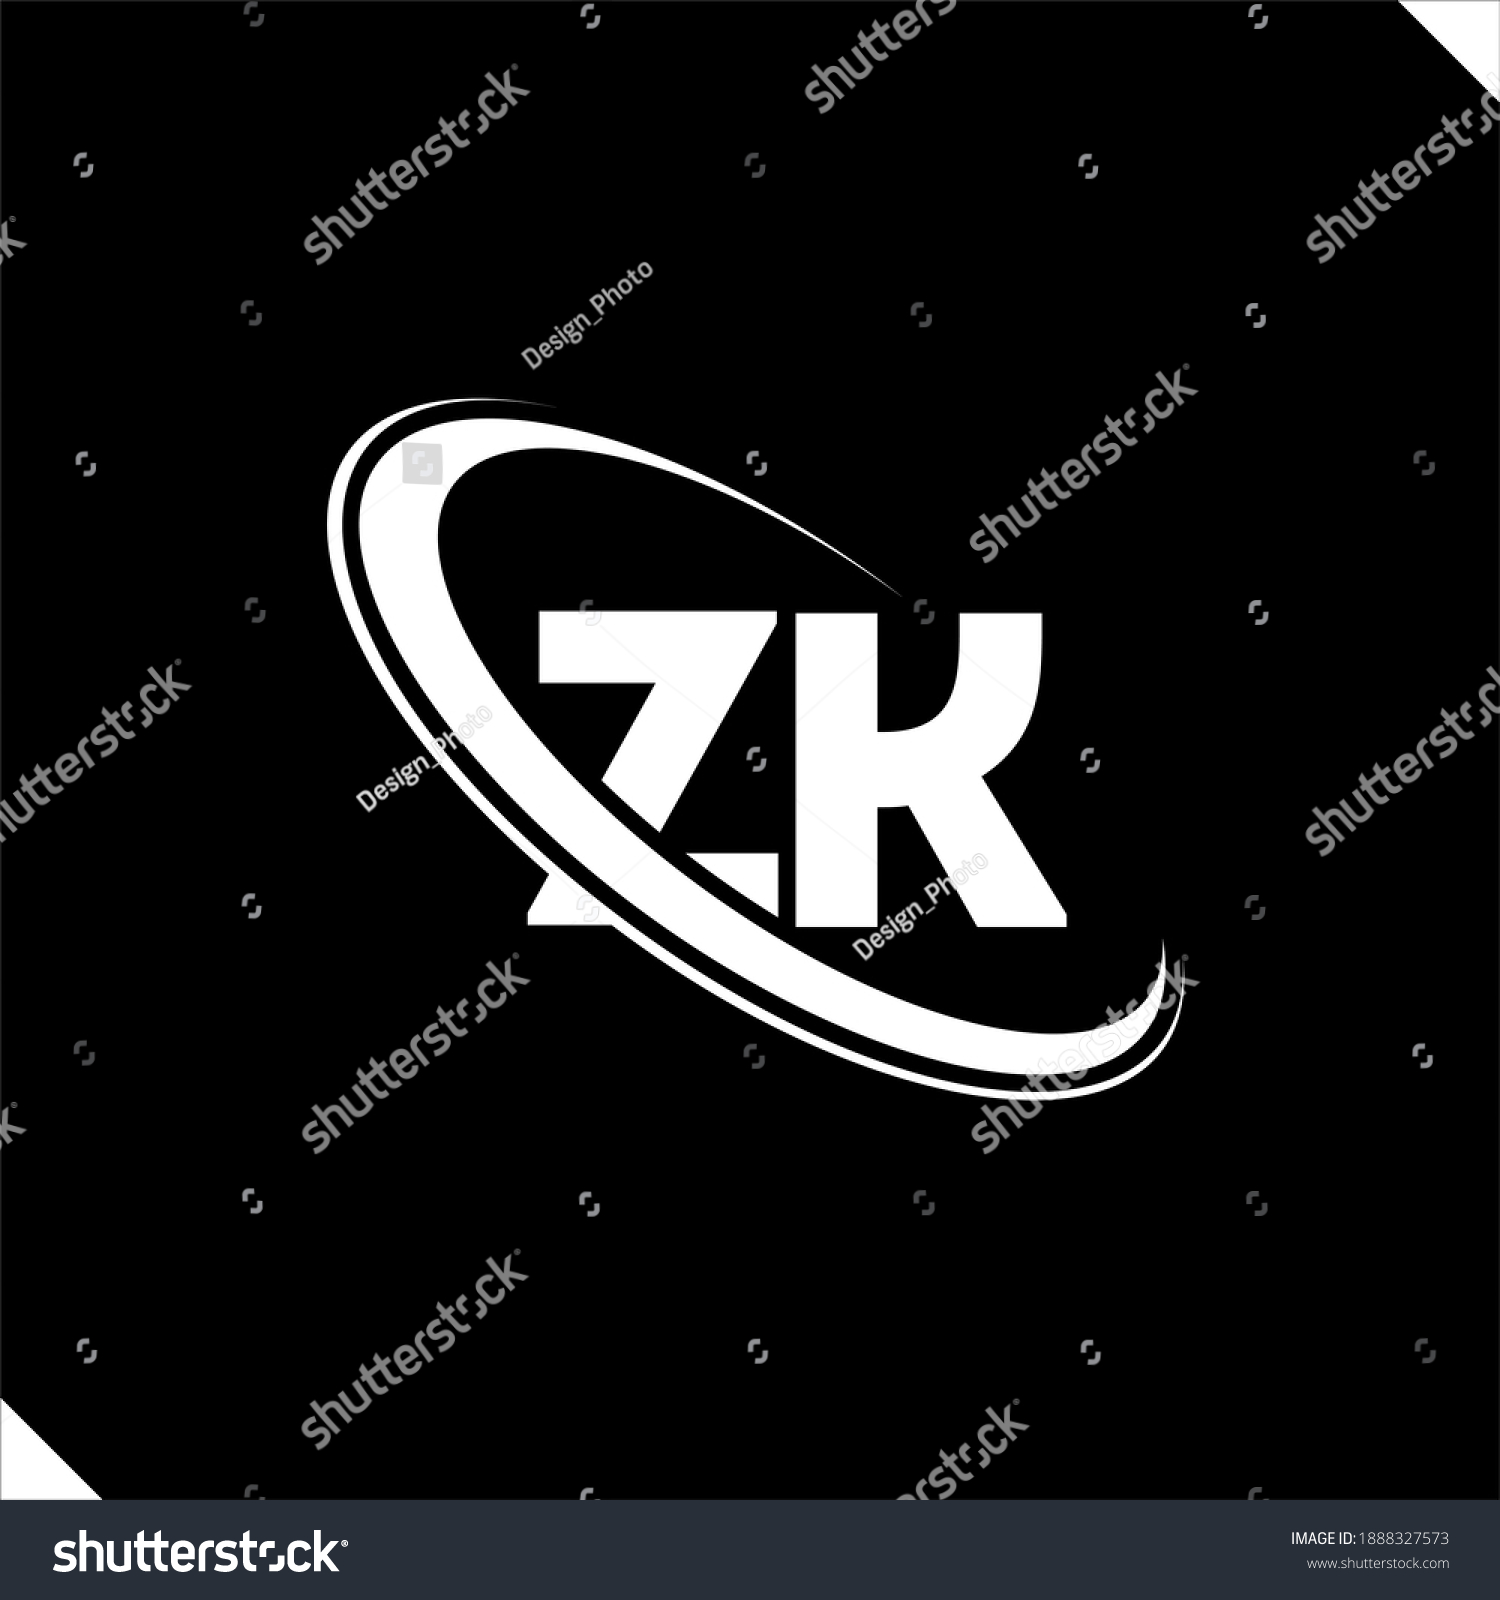 Zk Logo Z K Design White Stock Vector Royalty Free 1888327573 Shutterstock